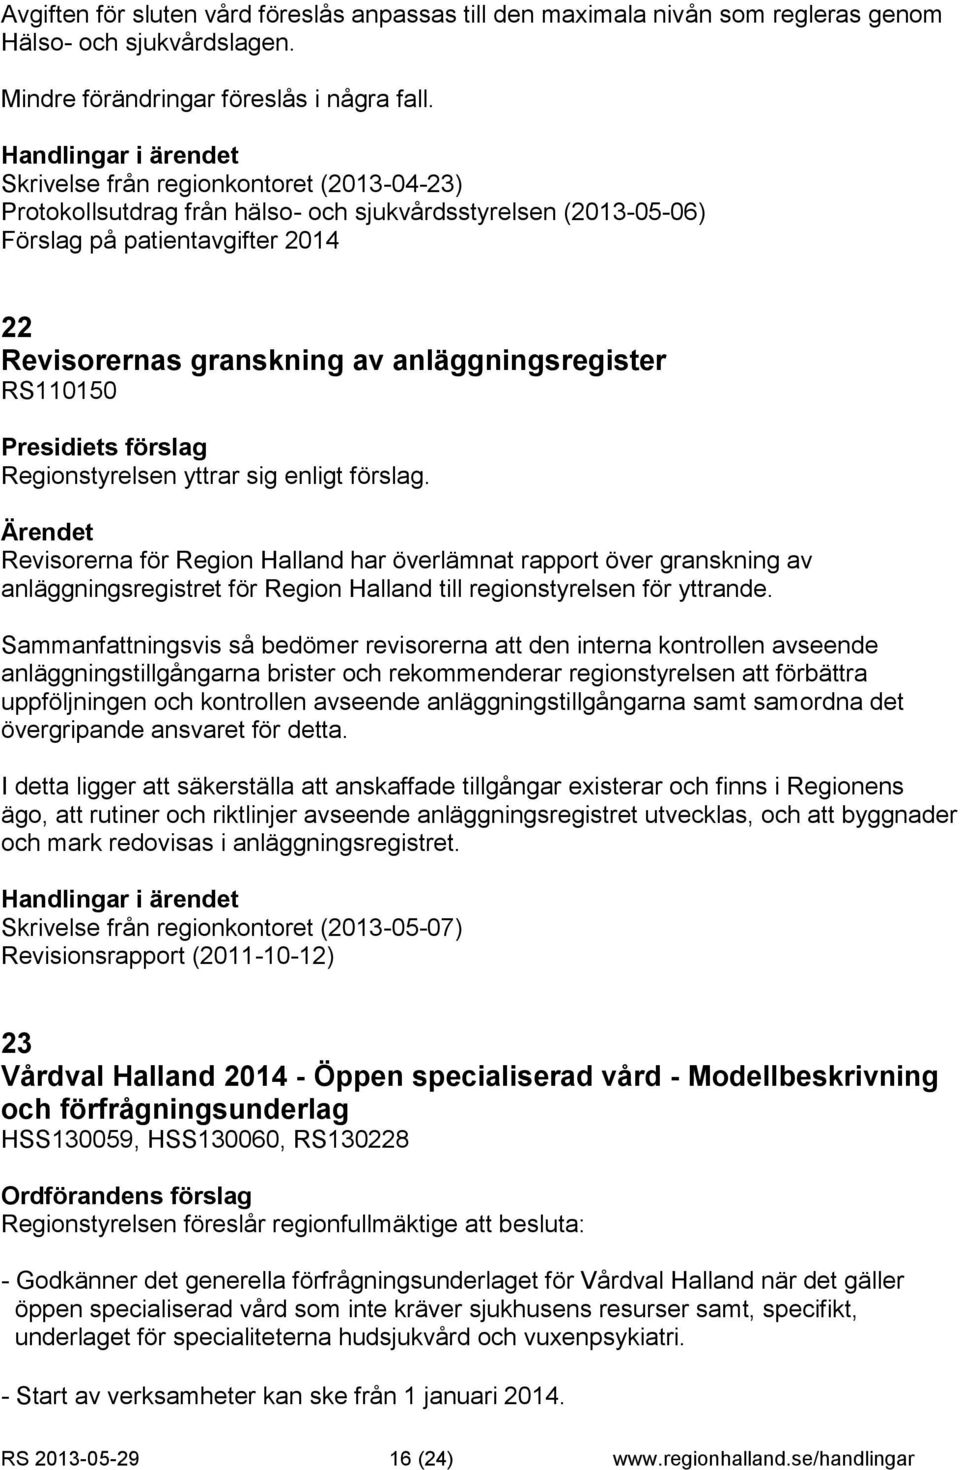 Regionstyrelsen yttrar sig enligt förslag. Revisorerna för Region Halland har överlämnat rapport över granskning av anläggningsregistret för Region Halland till regionstyrelsen för yttrande.